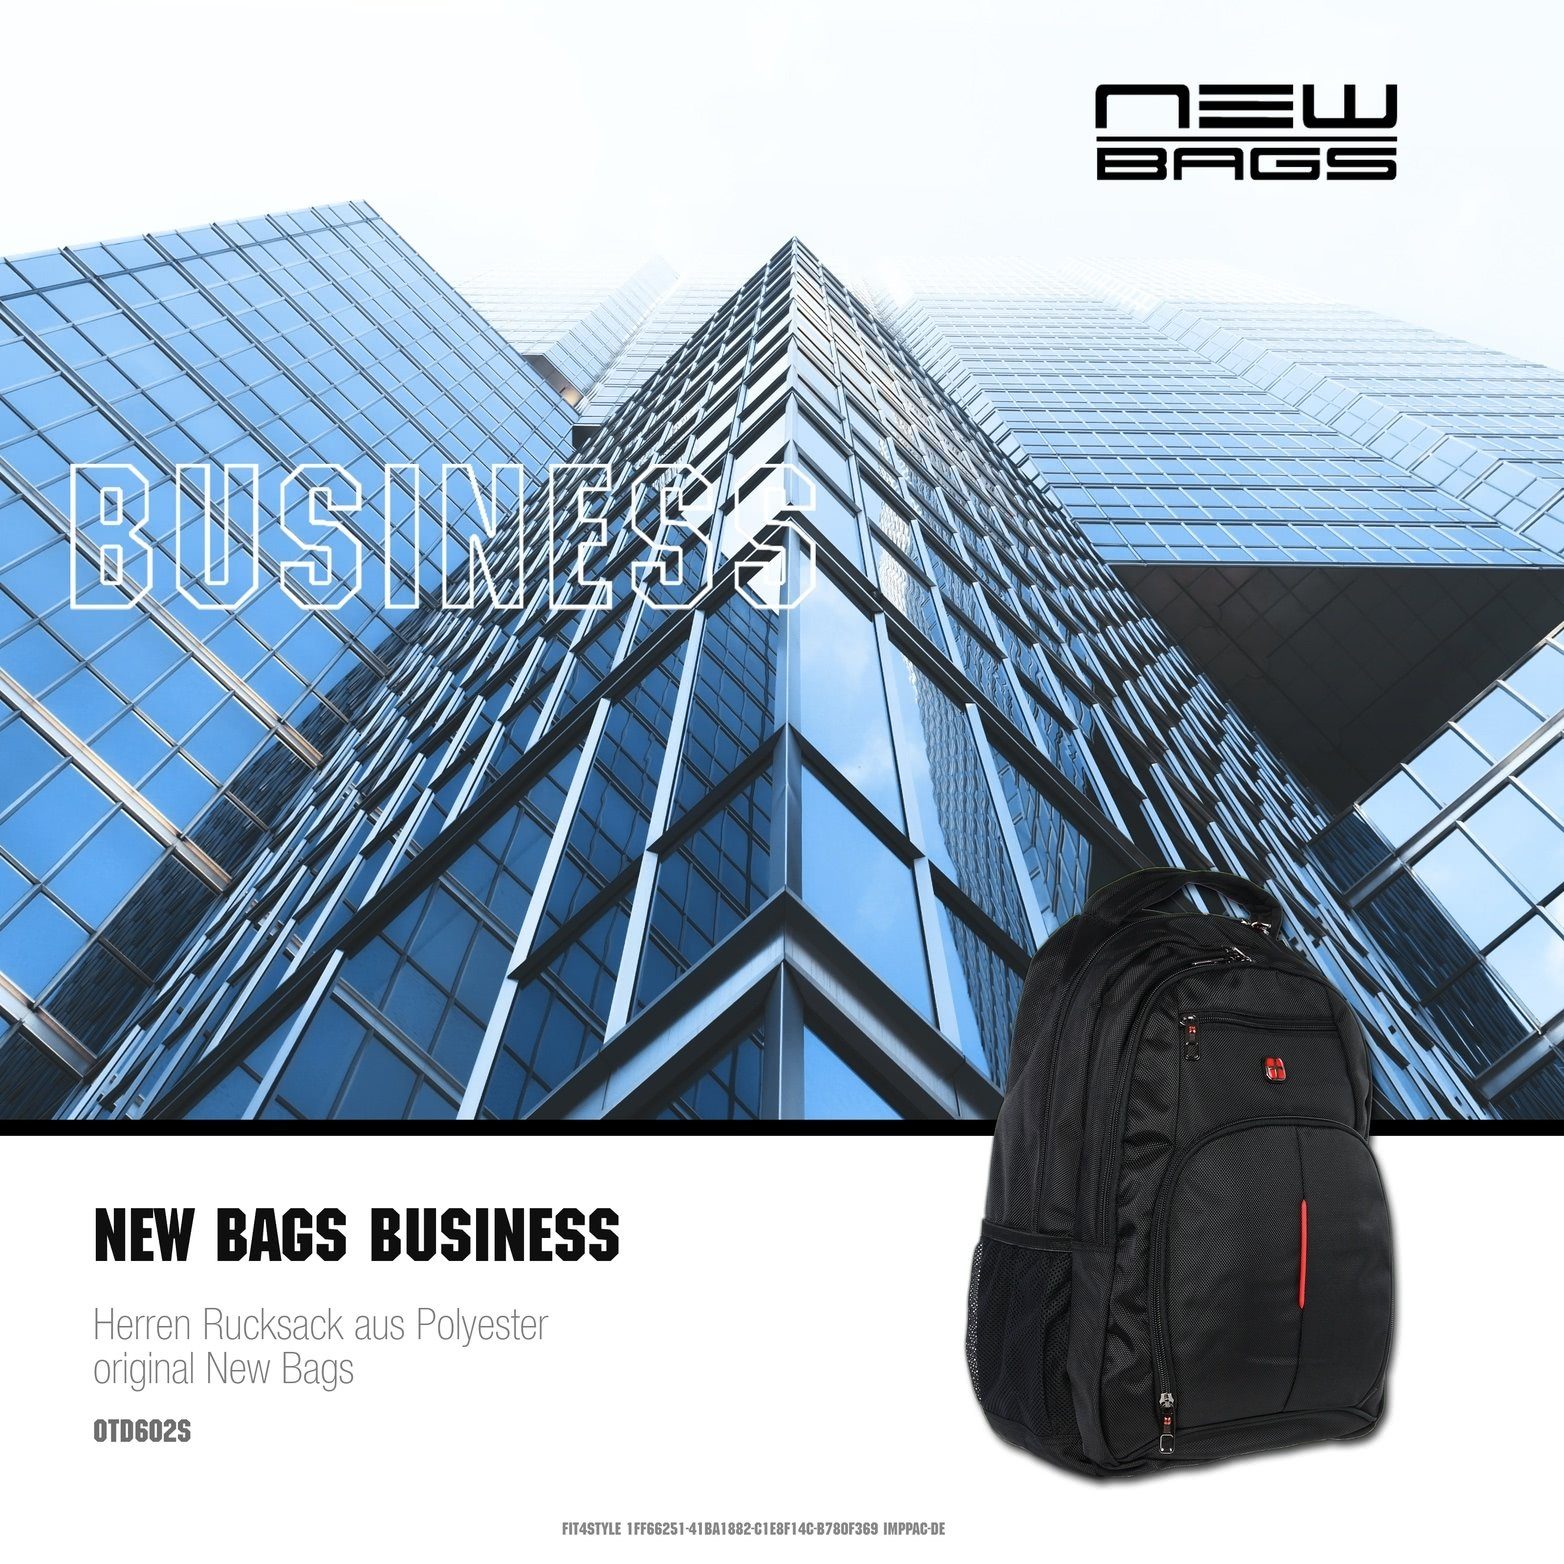 New Bags Laptop Rucksack Polyester grau schwarz Business Tasche OTD60XX 